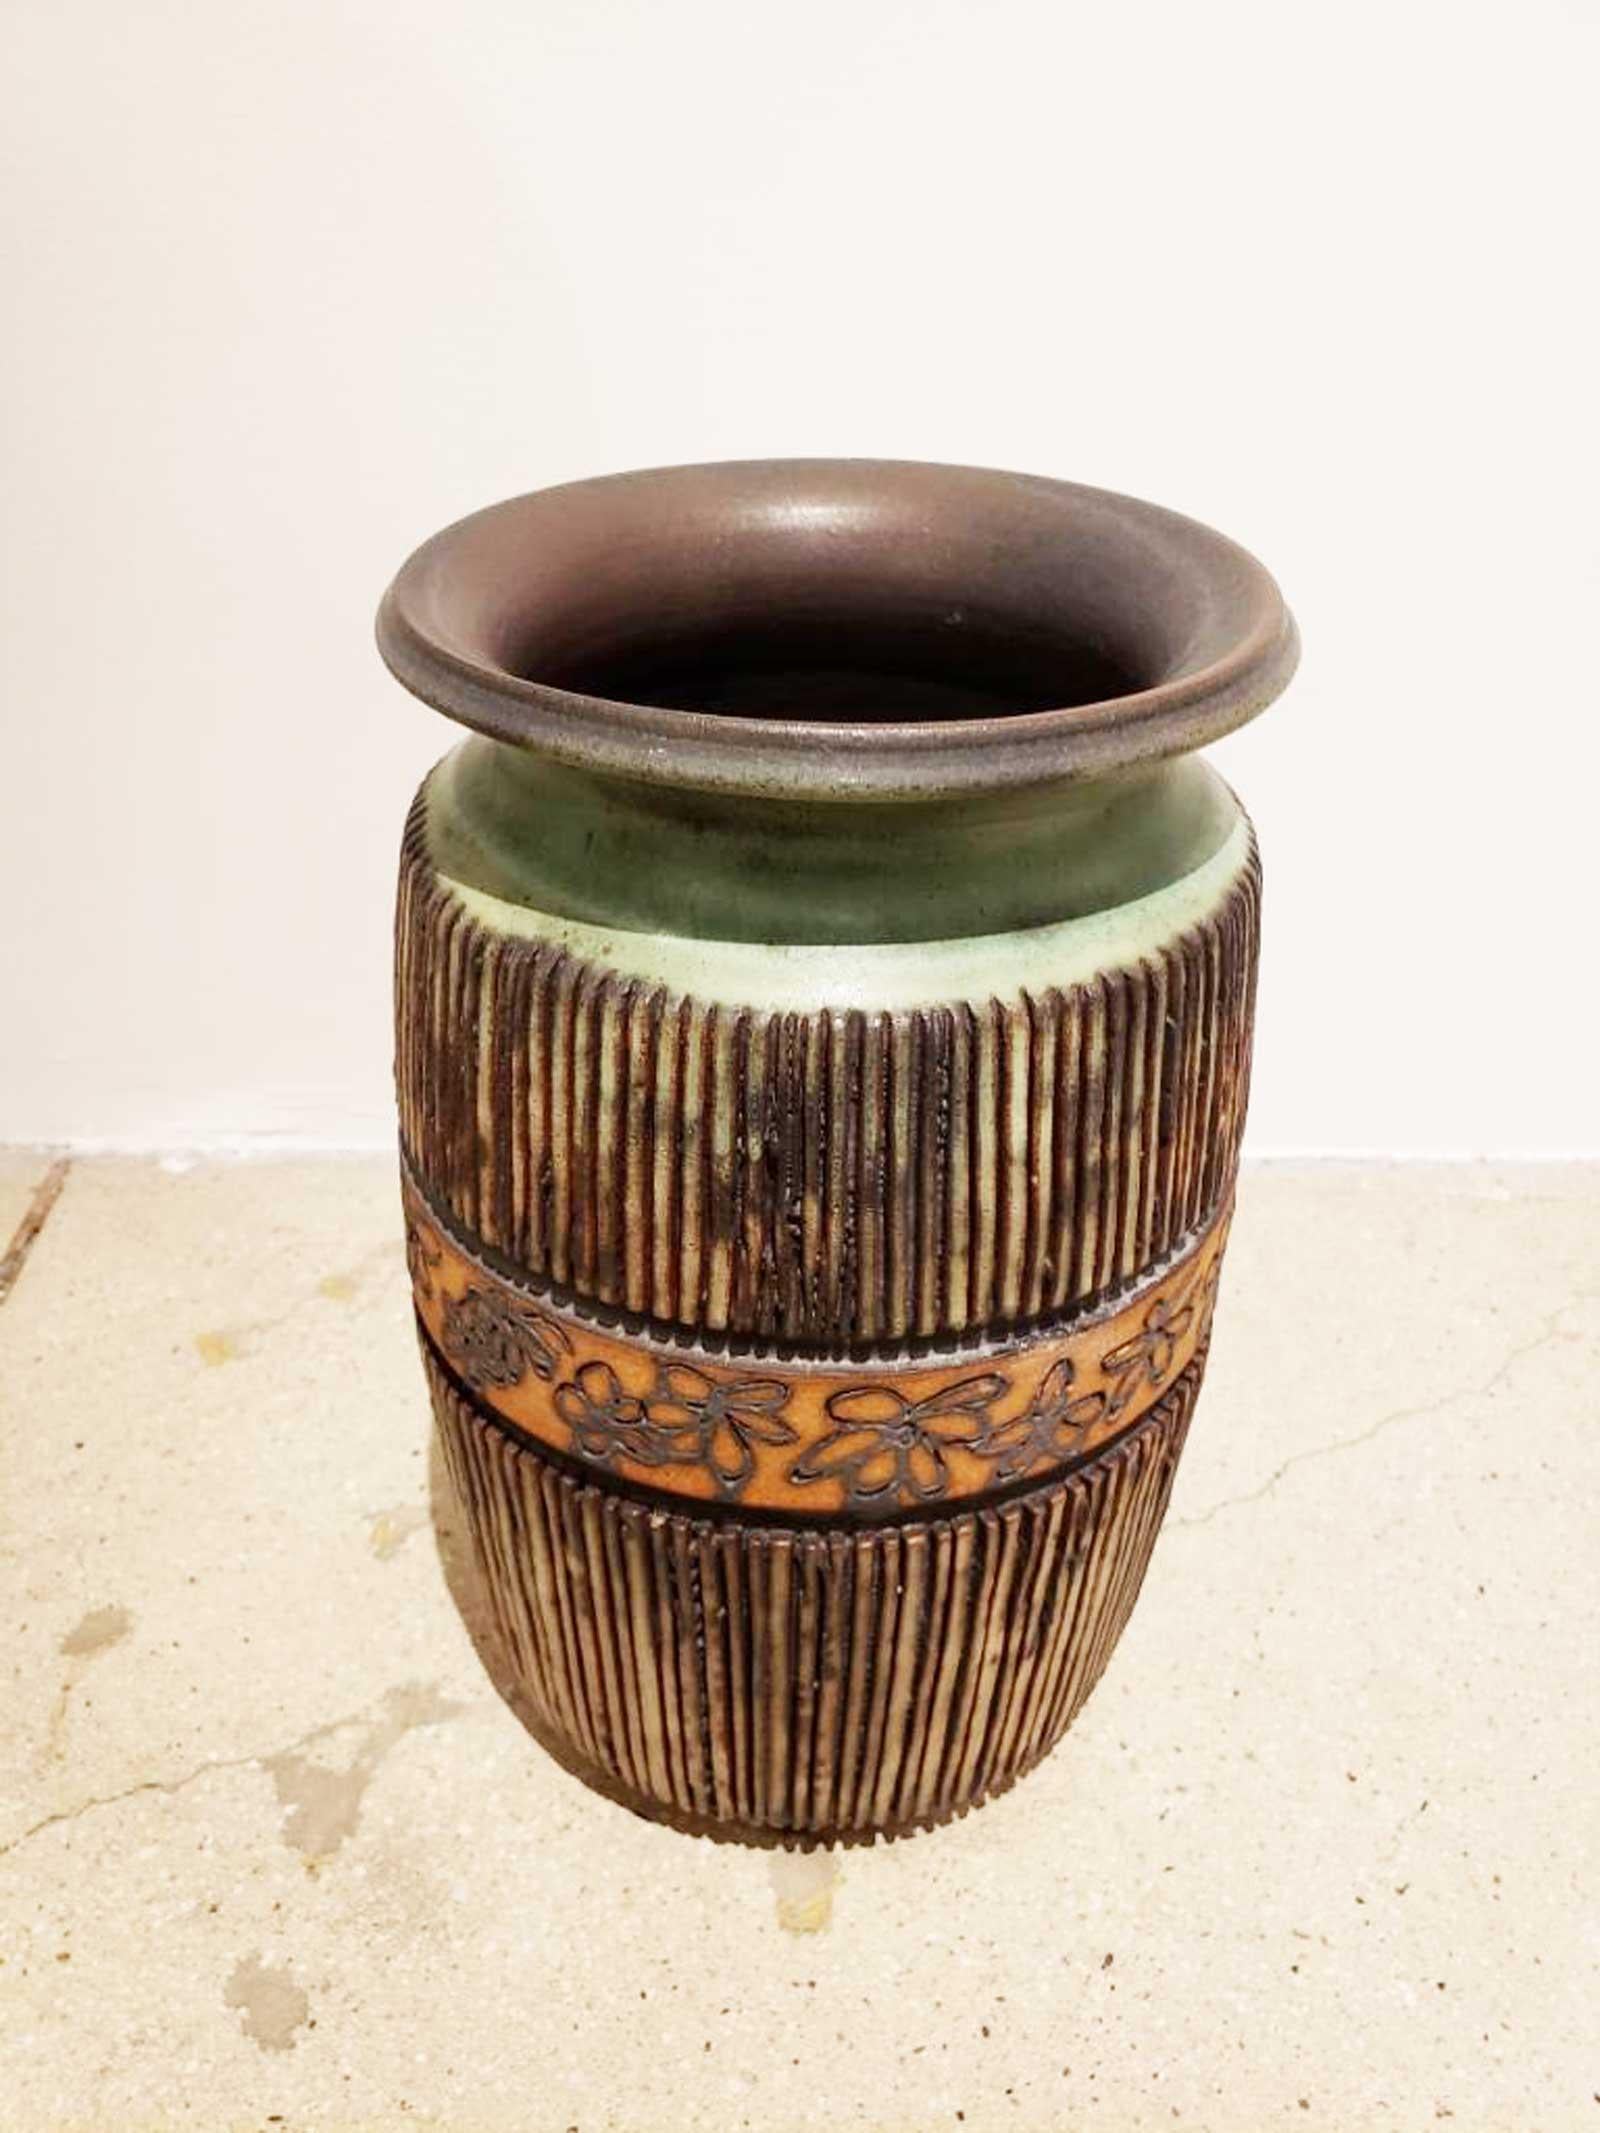 Magnifique vase de Bergloff, un fabricant de poterie californien. Il a travaillé dans la région de la baie de San Francisco.